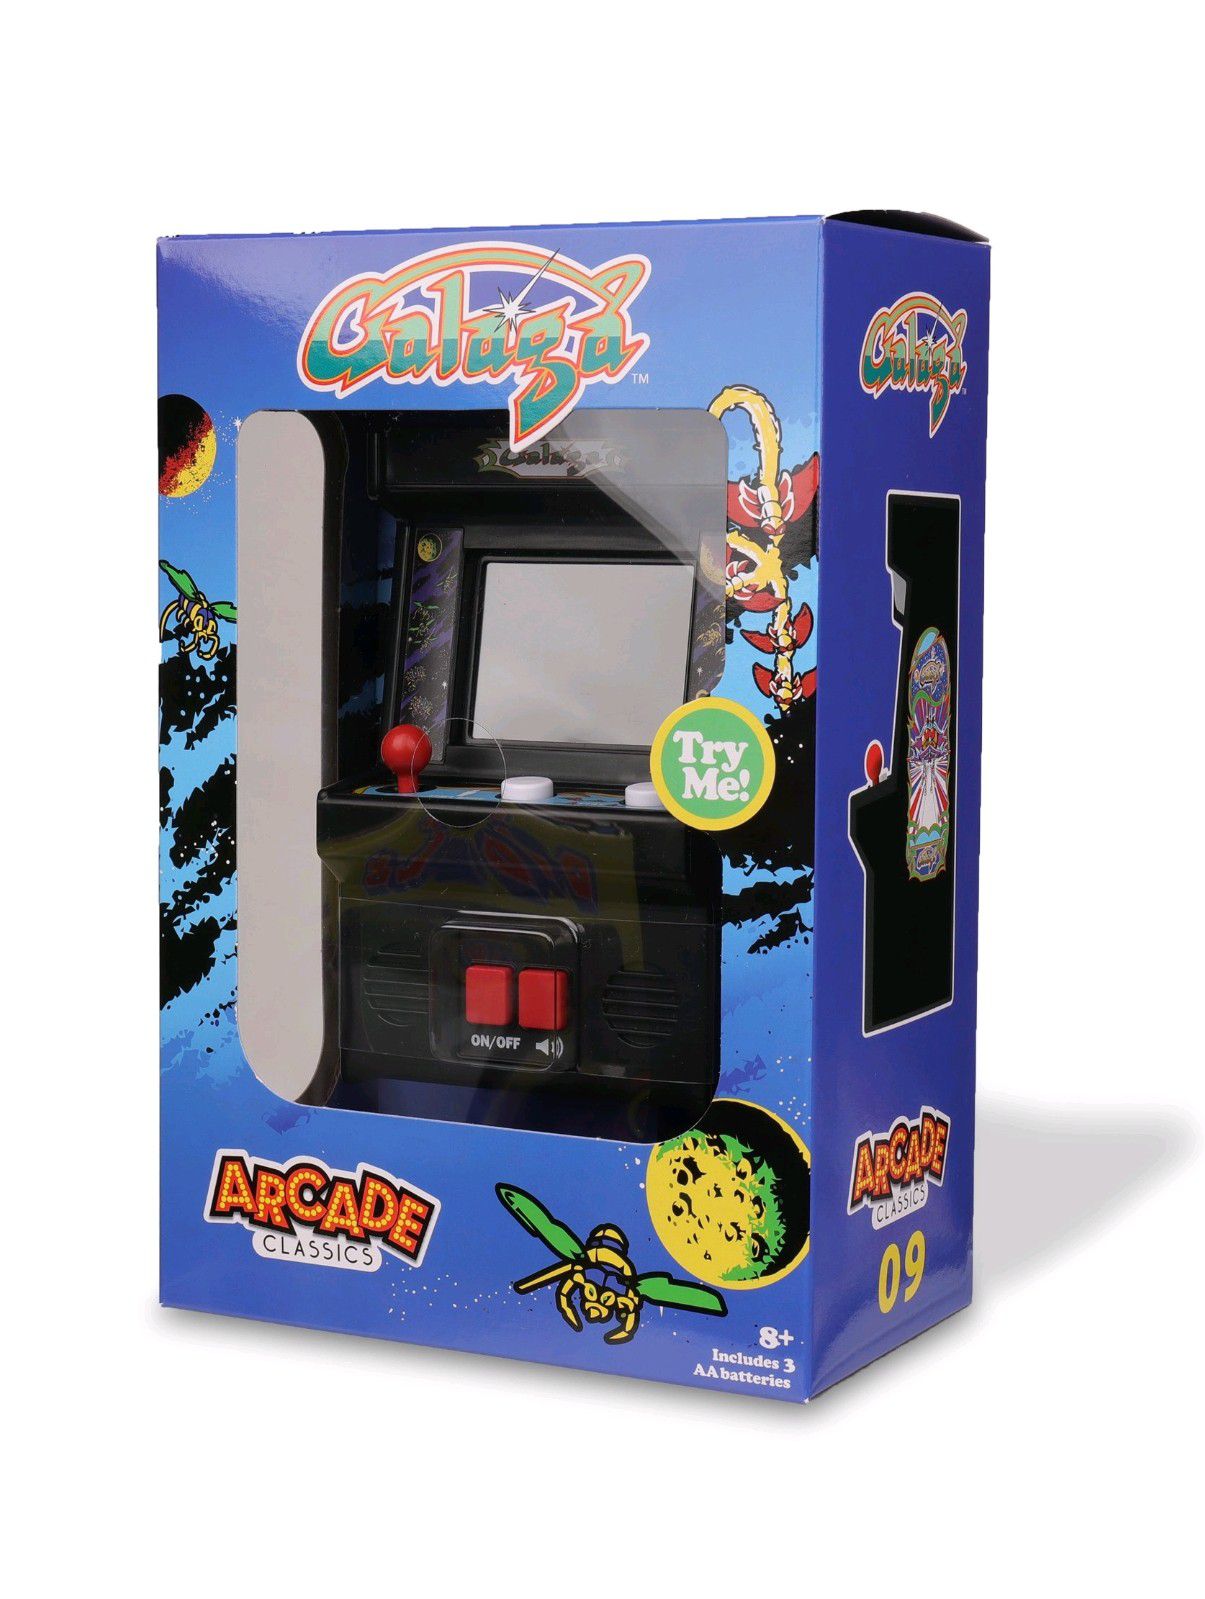 Arcade Classics -Galaga Retro Mini Arcade Game